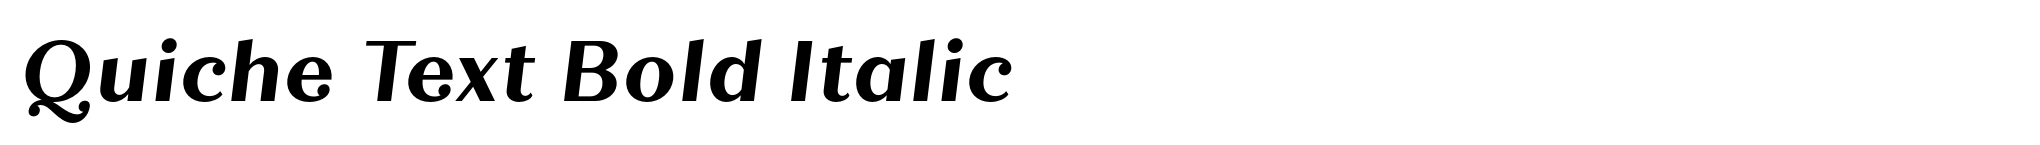 Quiche Text Bold Italic image